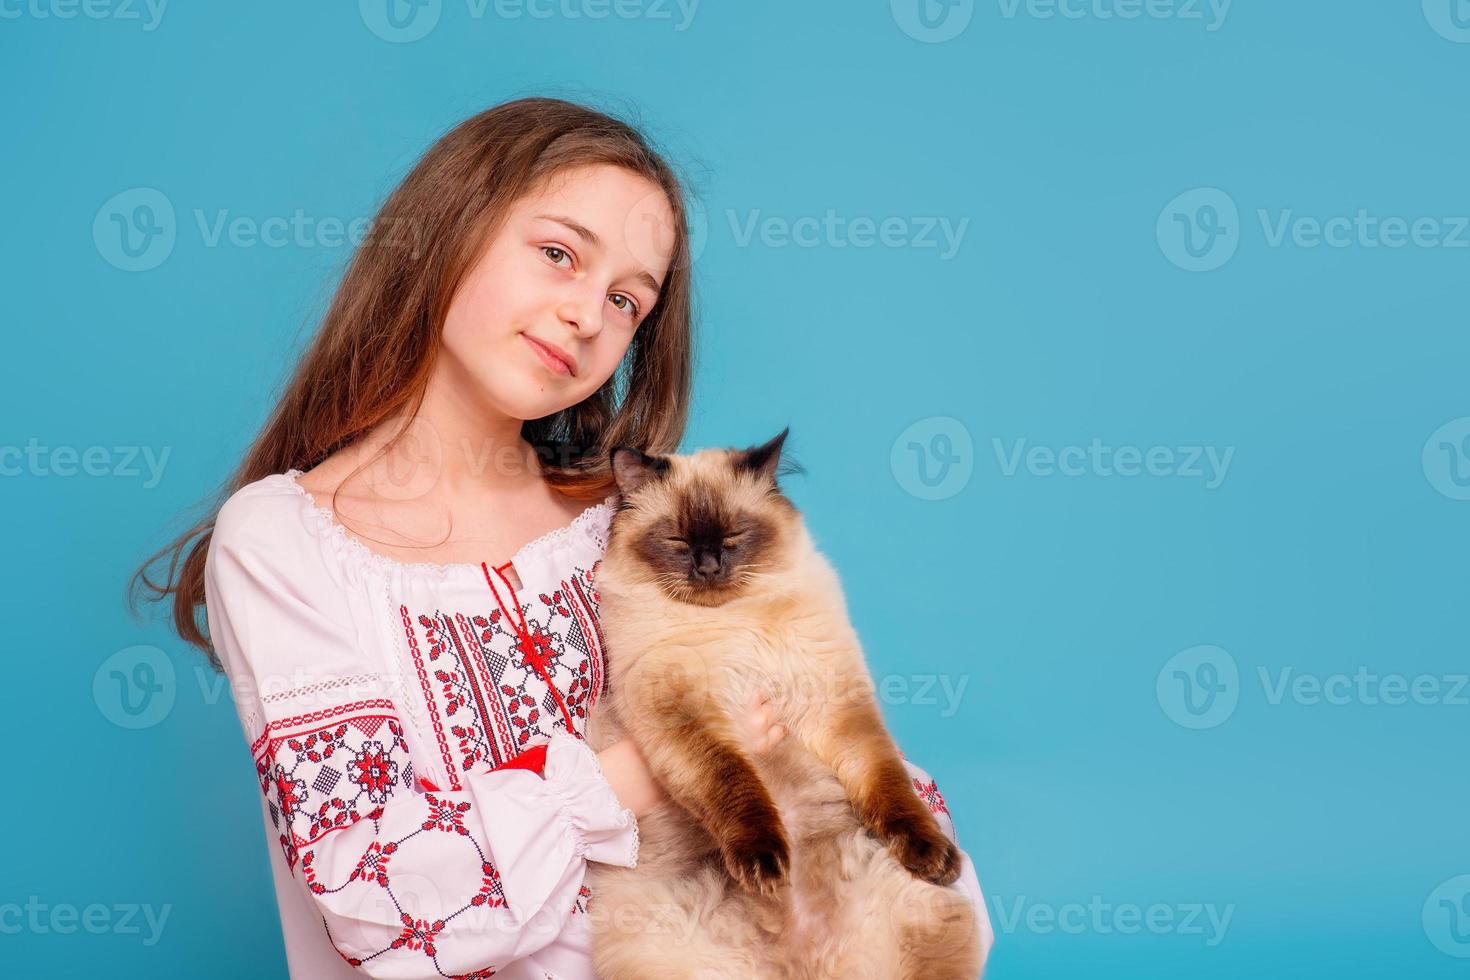 jovencita con un gato neva masquerade en sus brazos. chica en la camisa bordada sobre un fondo azul foto